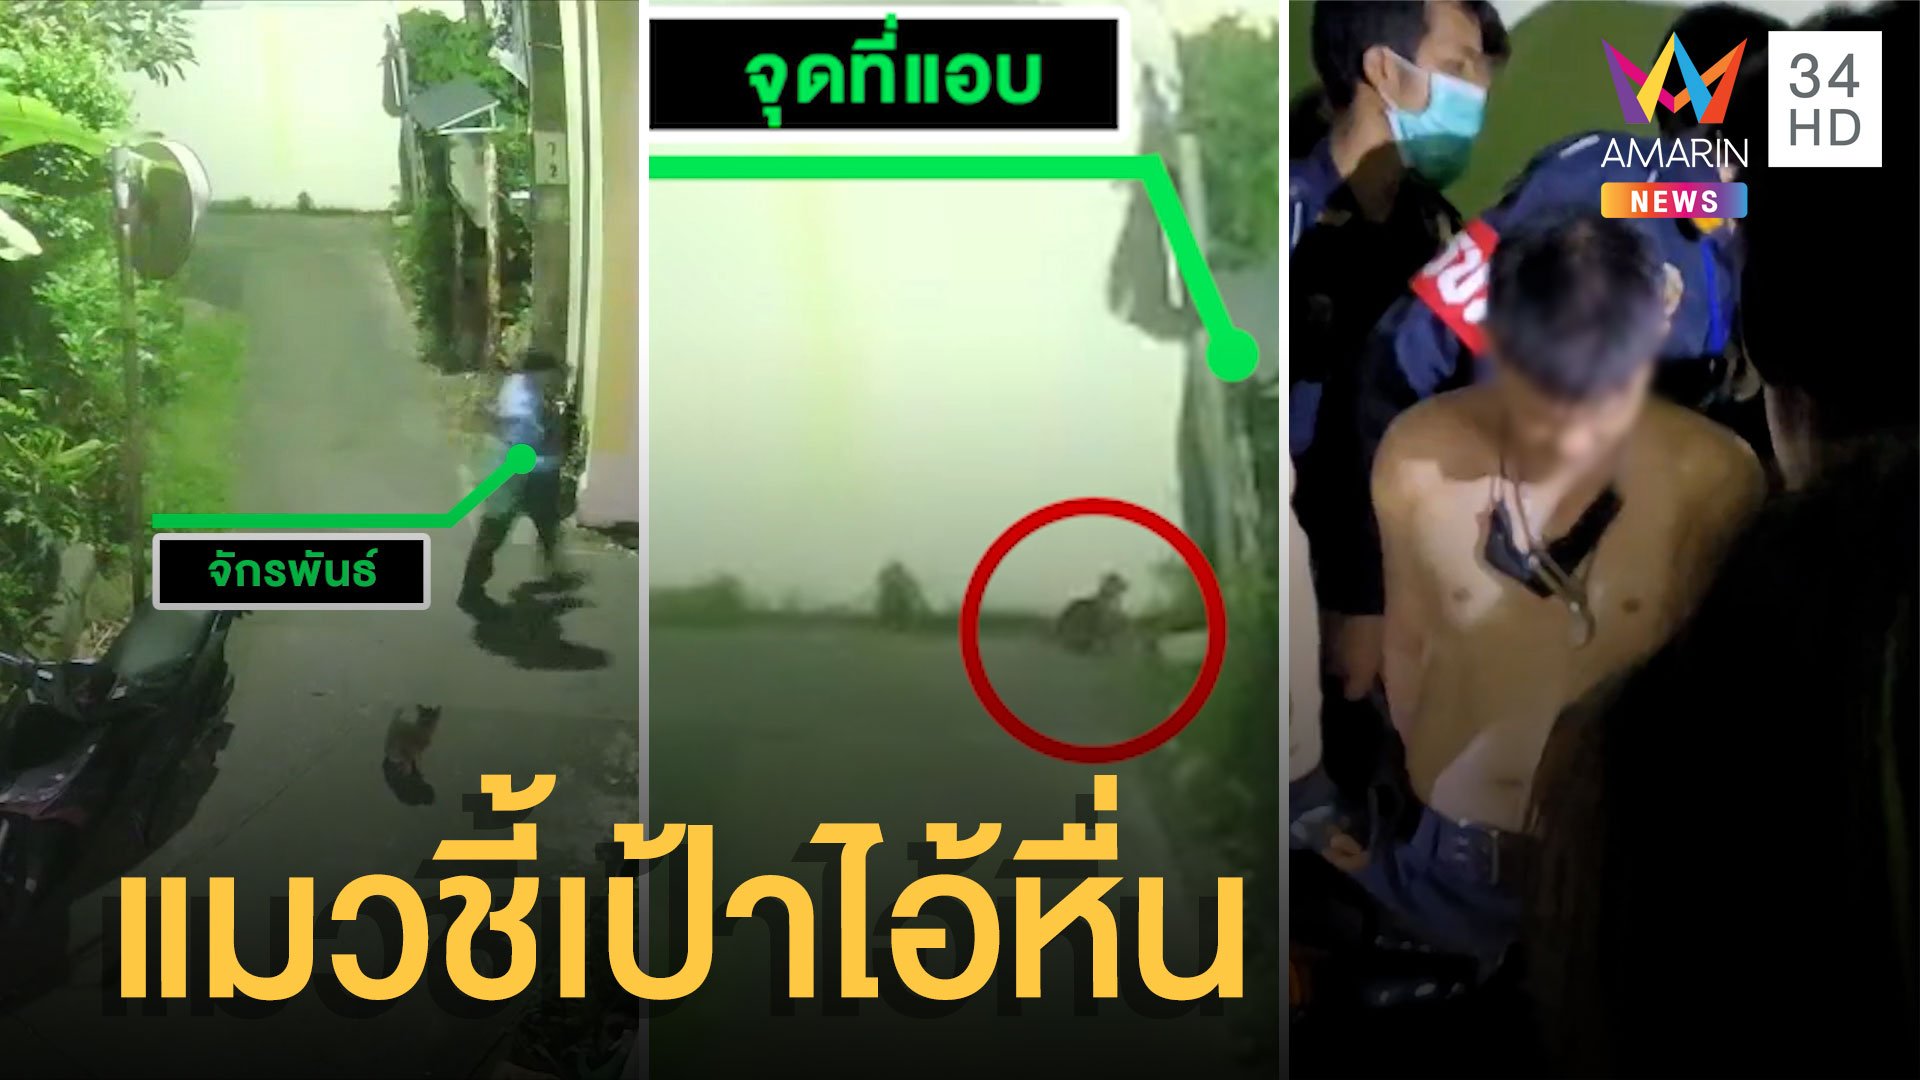 ชาวบ้านรุมจับ รปภ.หื่นฉุดสาวข่มขืน จับได้เพราะแมวร้องชี้เป้า | ข่าวอรุณอมรินทร์ | 13 มิ.ย. 65 | AMARIN TVHD34